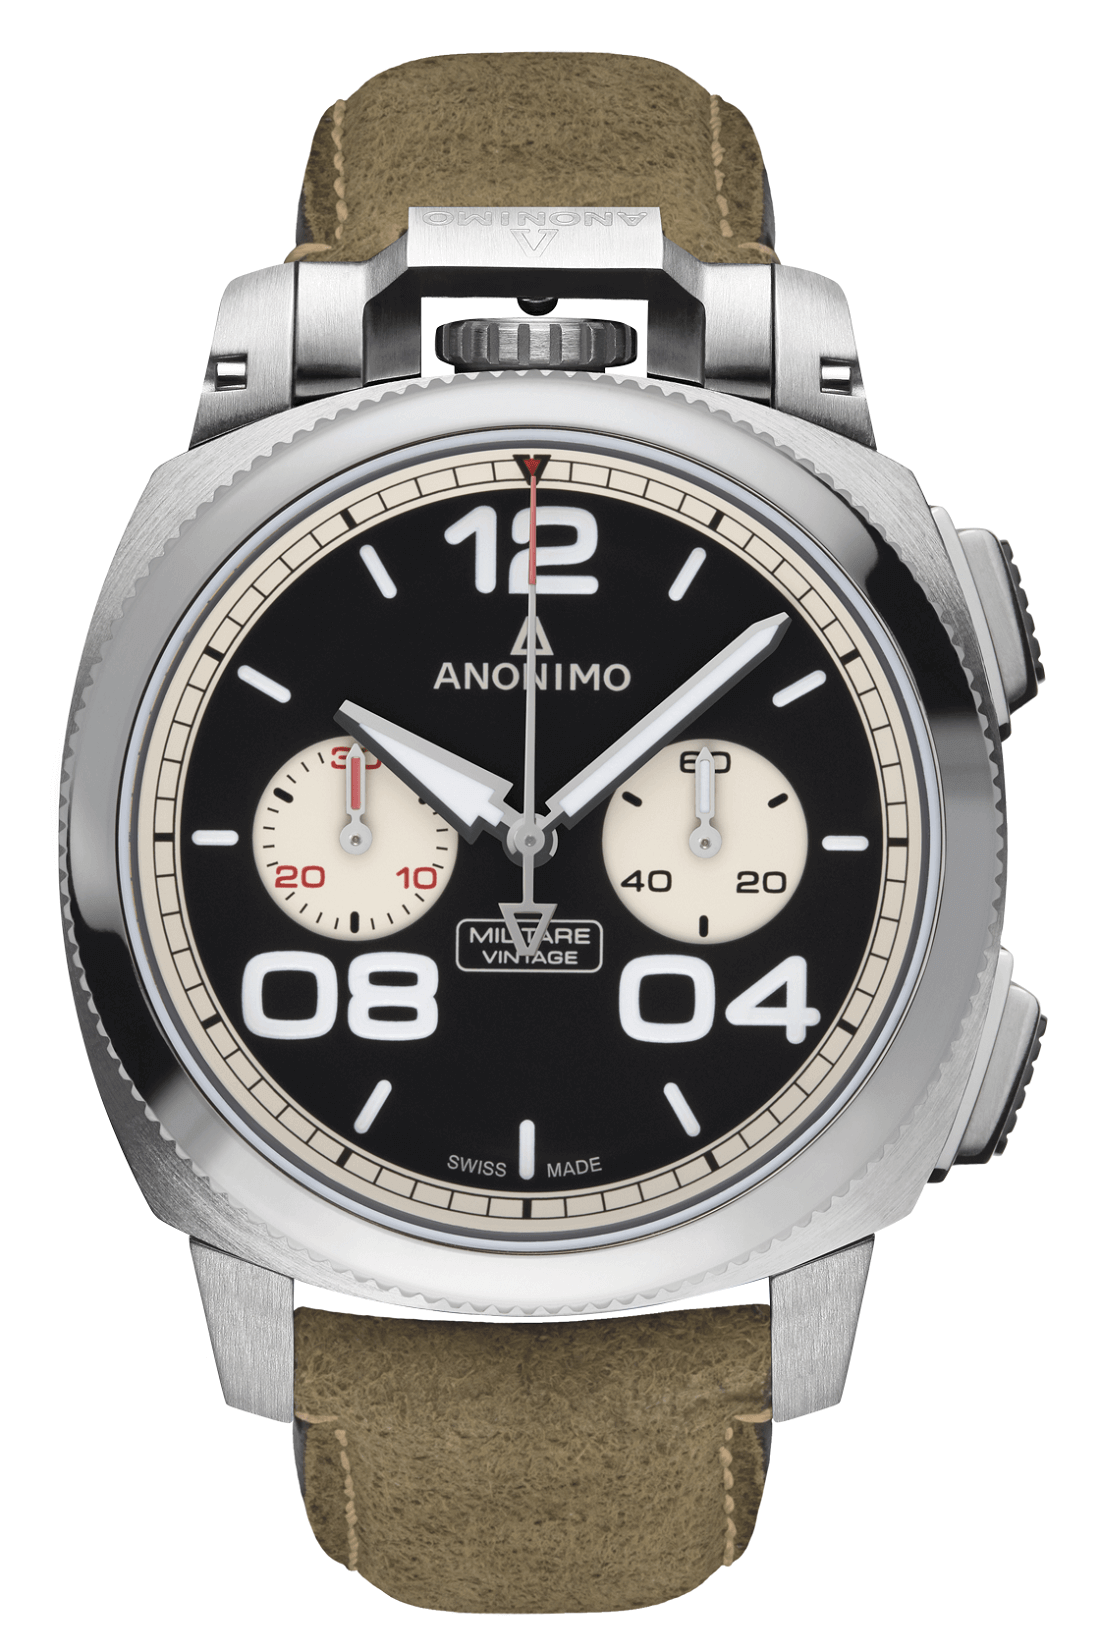 Đồng hồ ANONIMO Militare là lựa chọn hàng đầu của thợ lặn